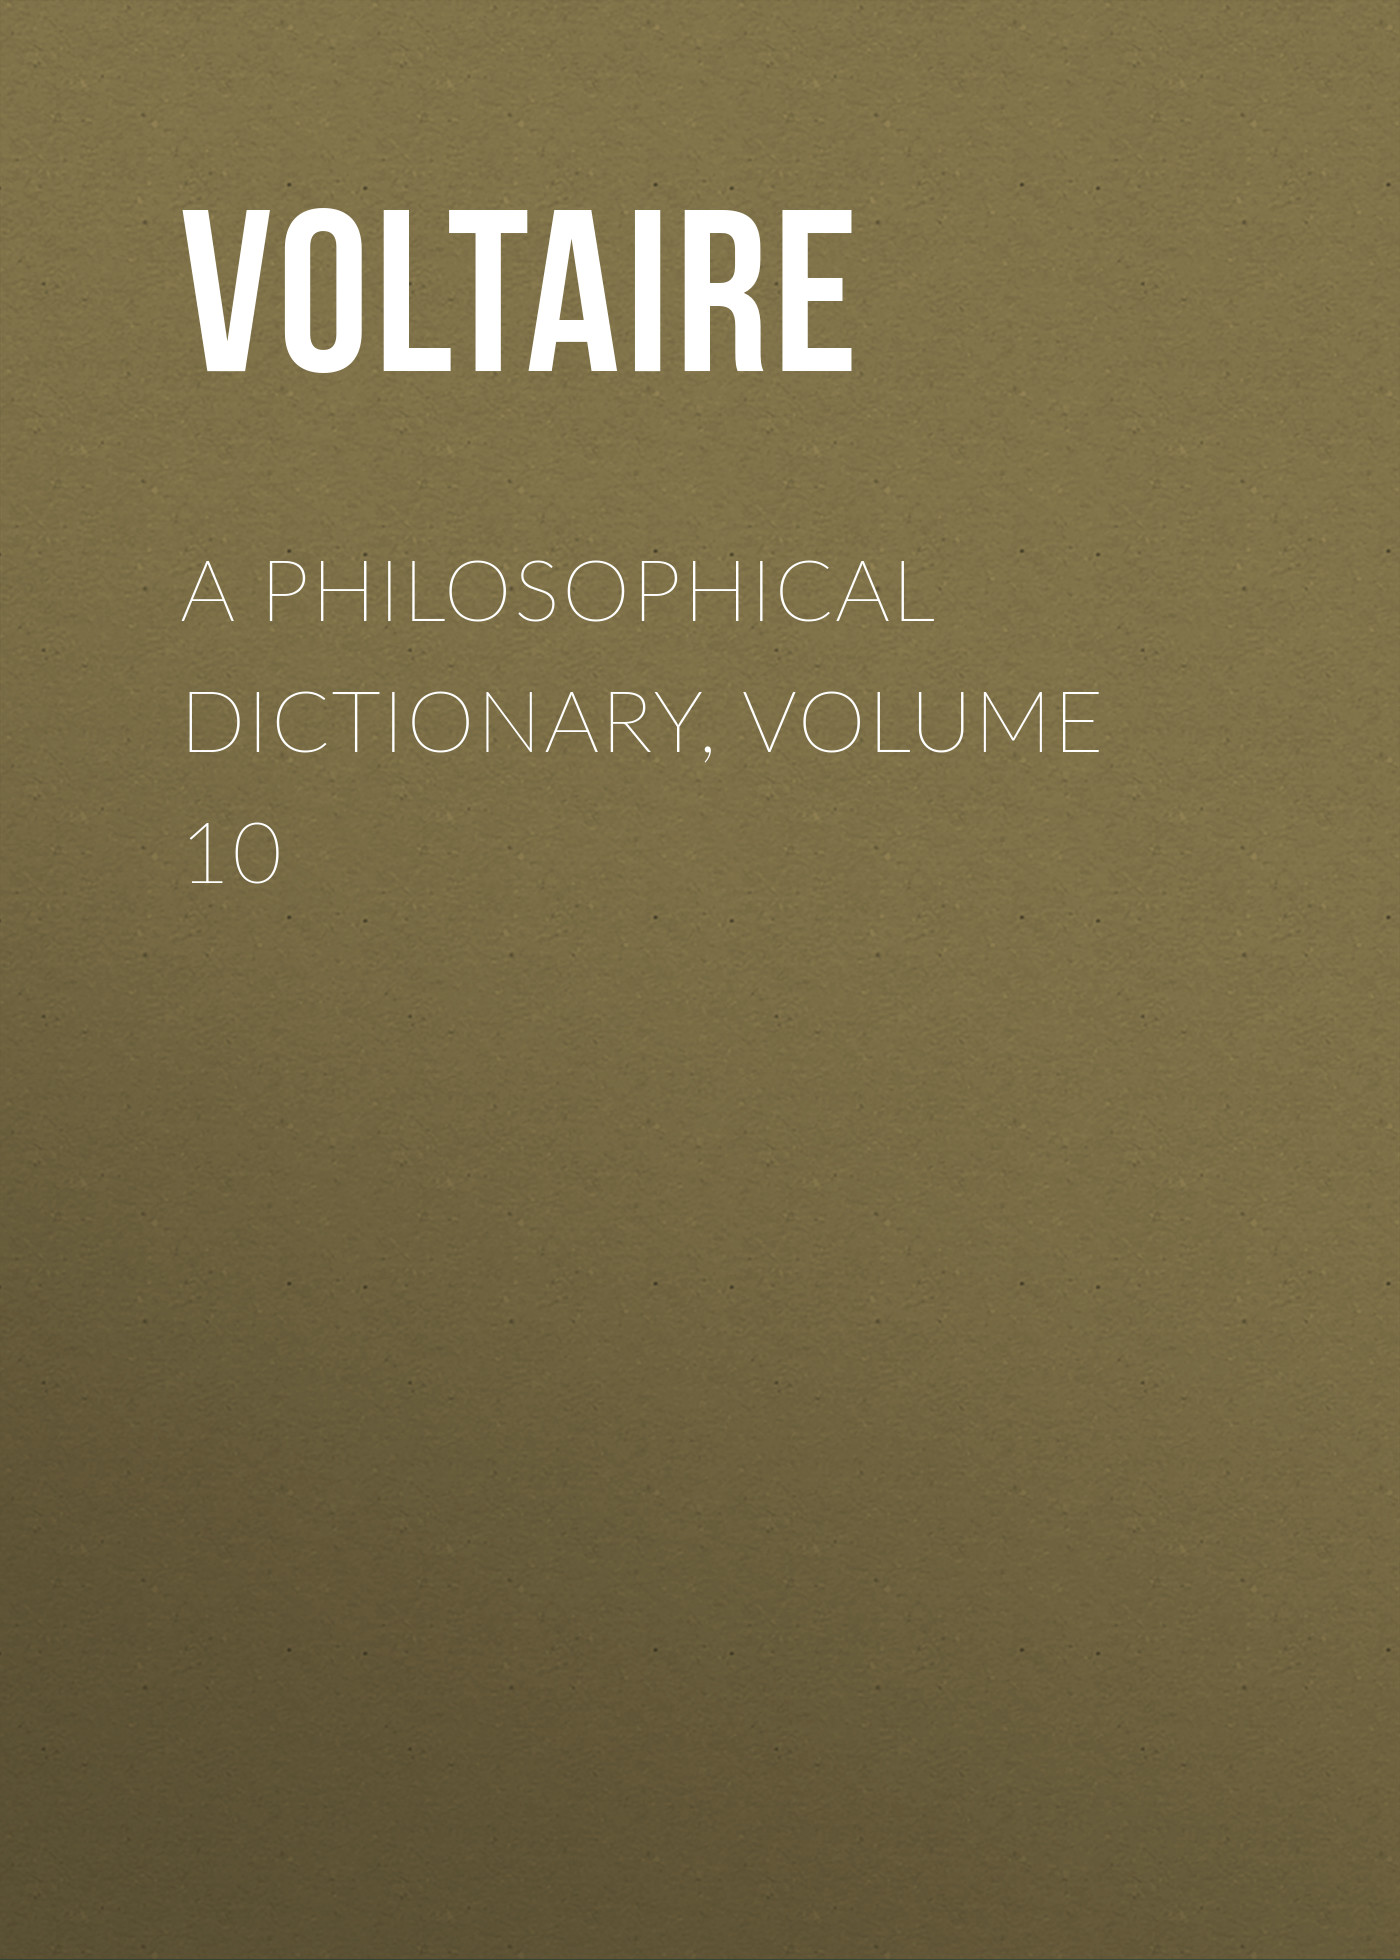 Книга A Philosophical Dictionary, Volume 10 из серии , созданная  Voltaire, может относится к жанру Философия, Литература 18 века, Зарубежная классика. Стоимость электронной книги A Philosophical Dictionary, Volume 10 с идентификатором 25560884 составляет 0 руб.